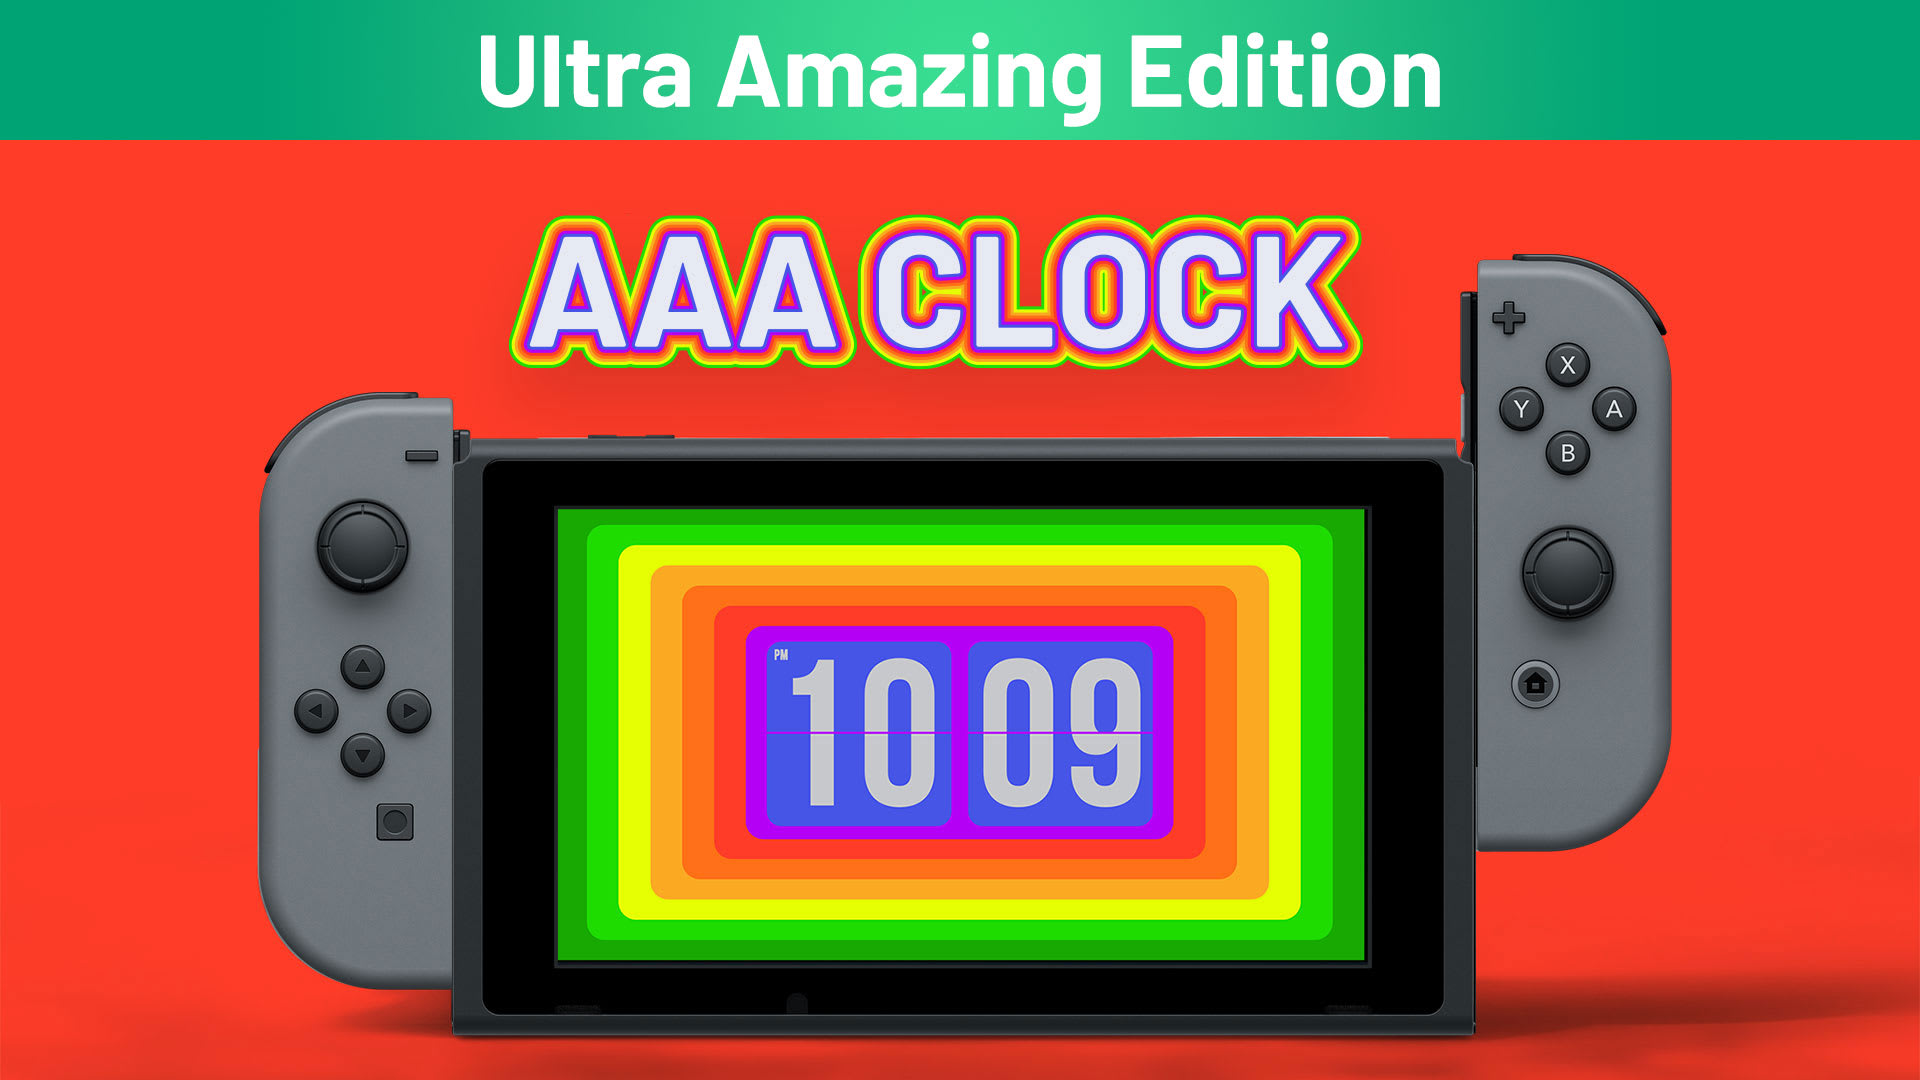 AAA Clock Ultra Amazing Edition